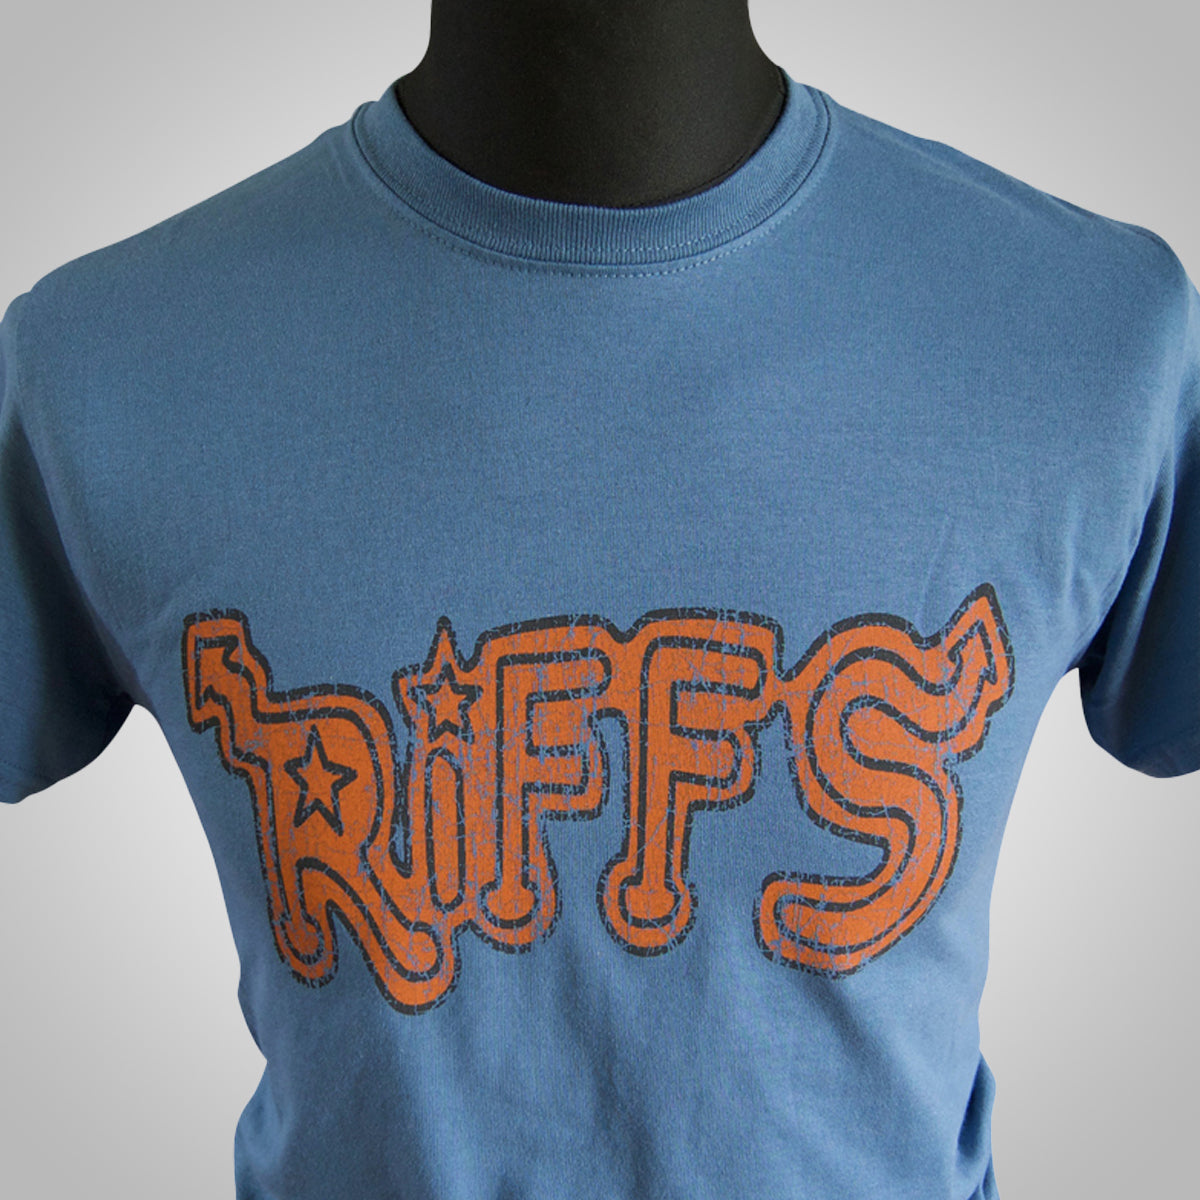 Riffs T Shirt (Colour Options)